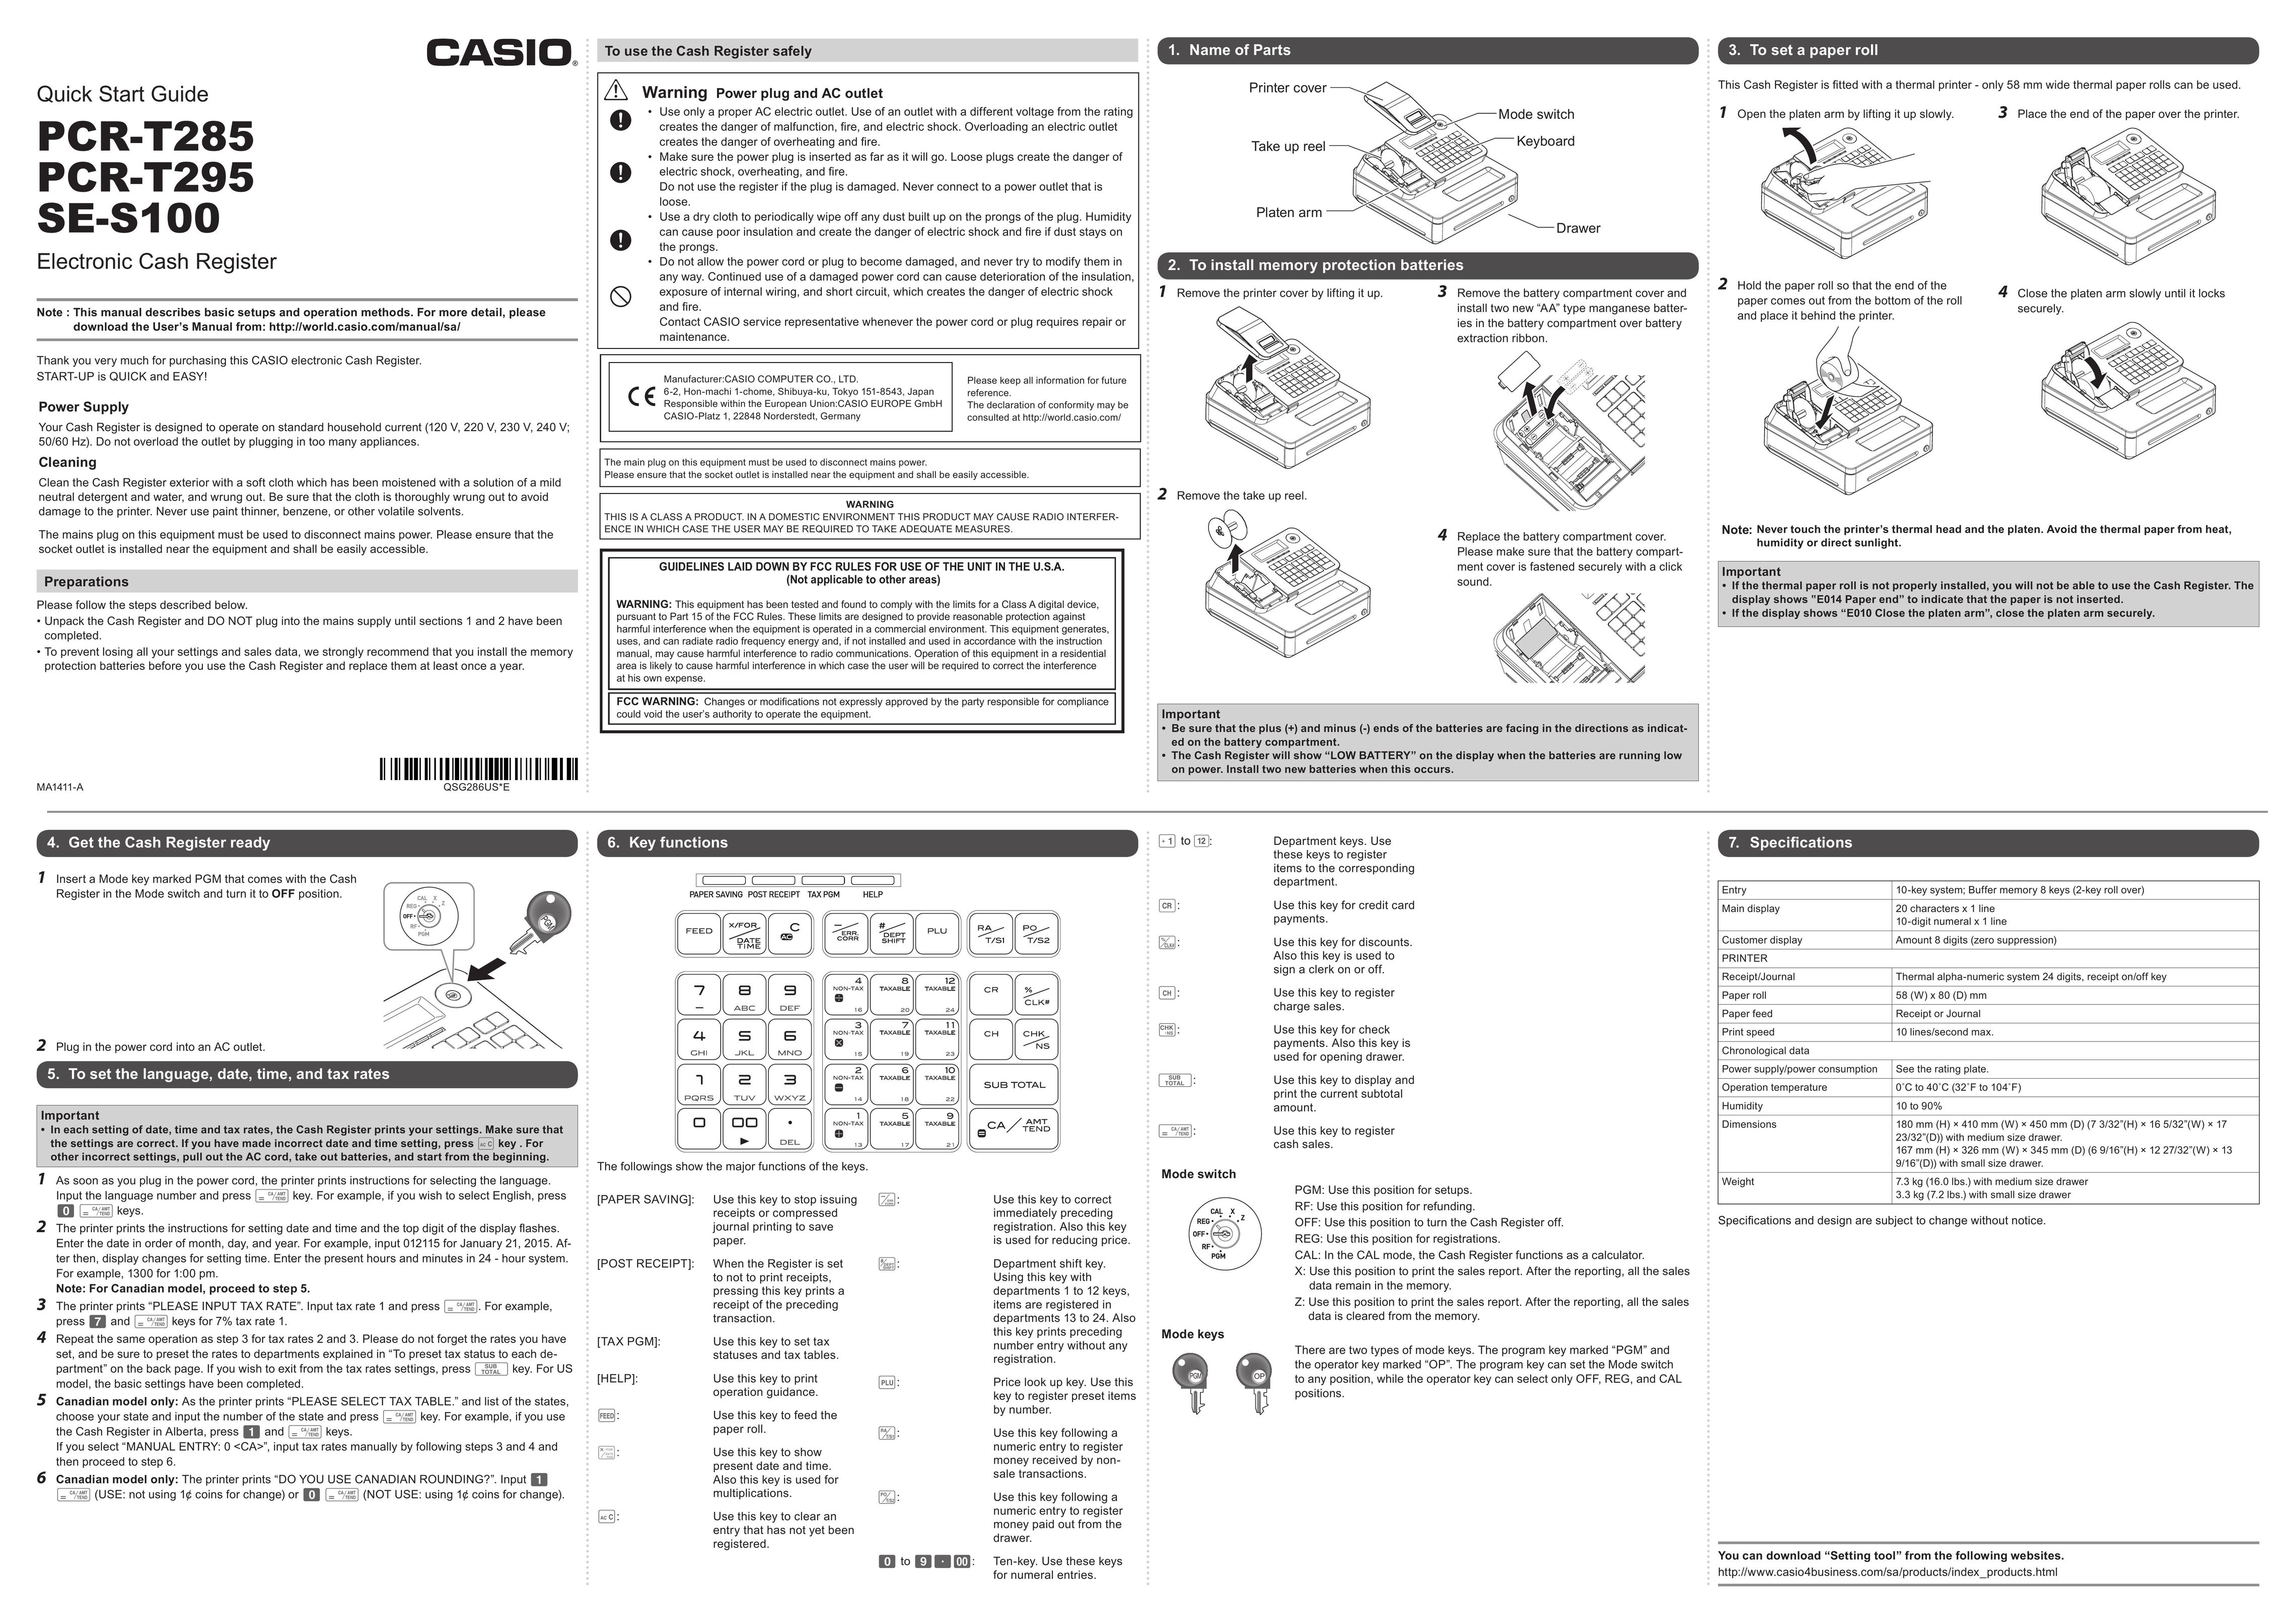 Casio SE-S100 Cash Register User Manual